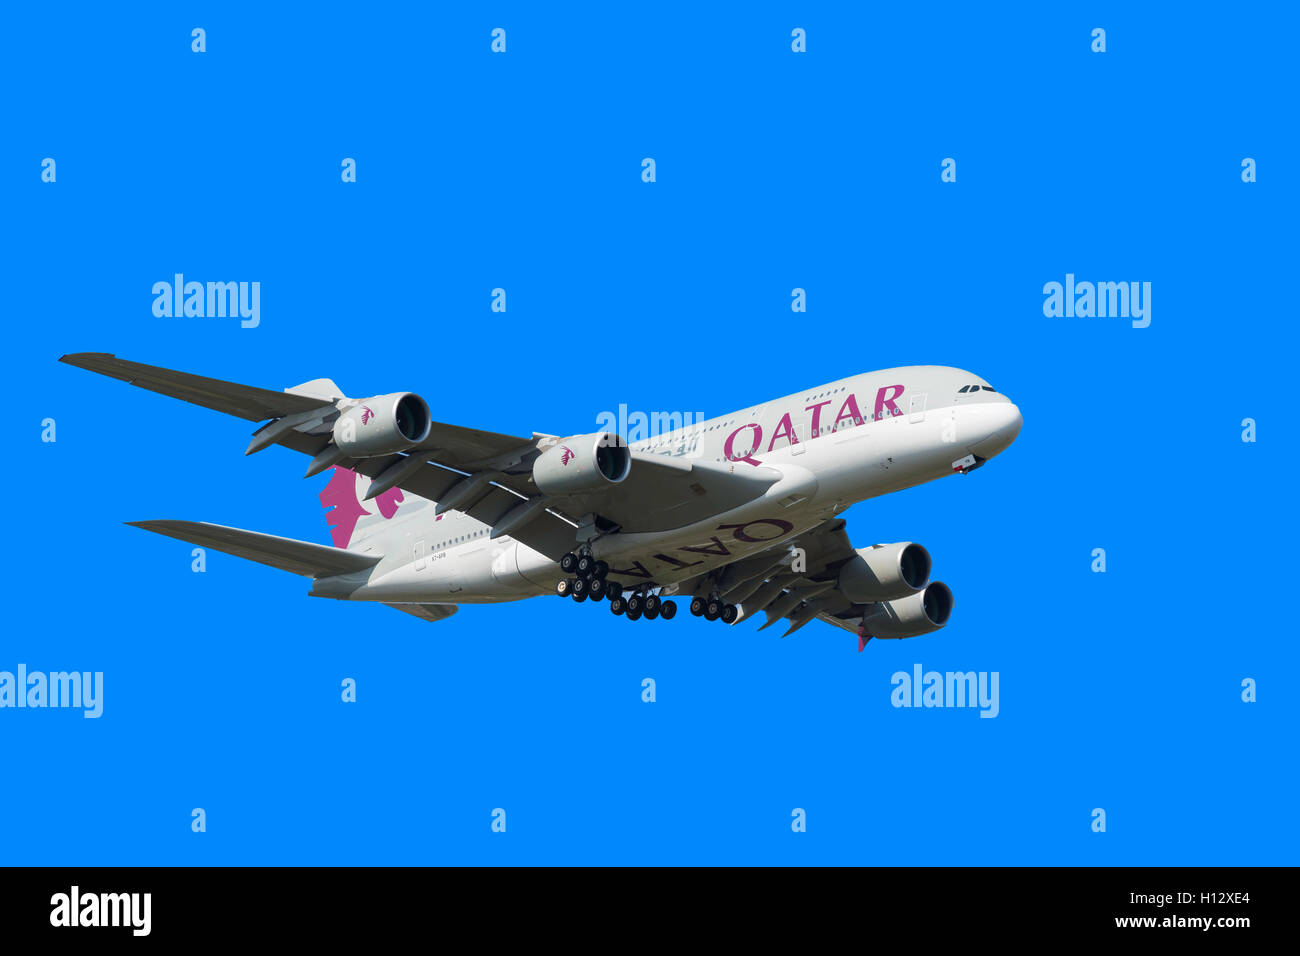 Qatar Airways Airbus A380 landet auf dem Flughafen Heathrow, London Borough of Hillingdon, Greater London, England, Vereinigtes Königreich Stockfoto